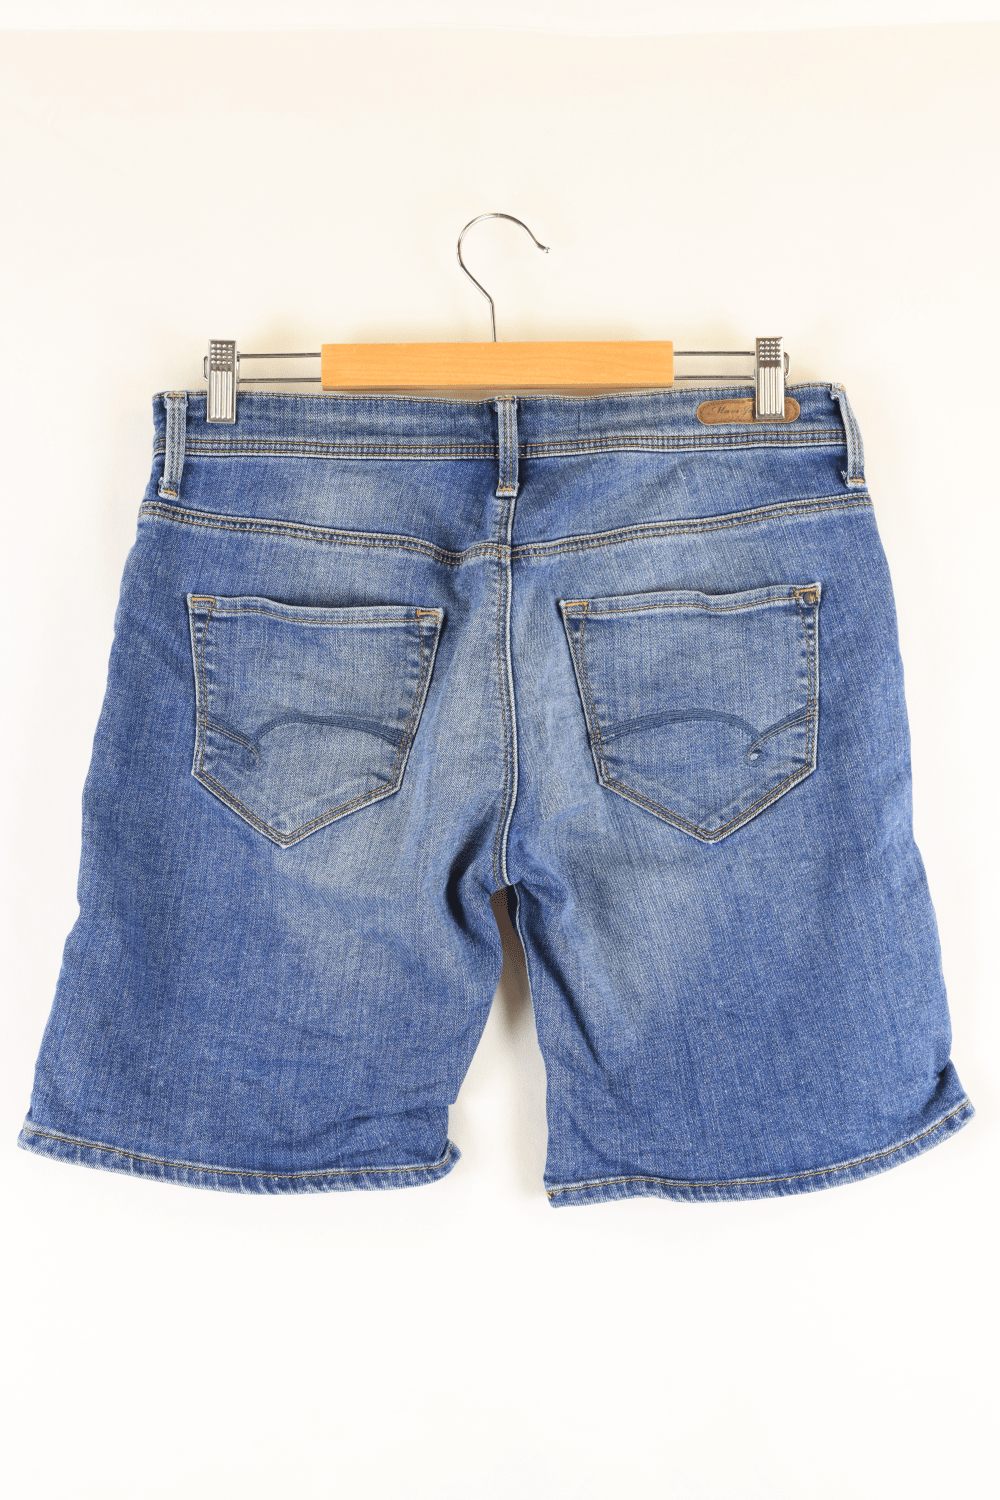 Mavi Jeans Blue Denim Shorts10